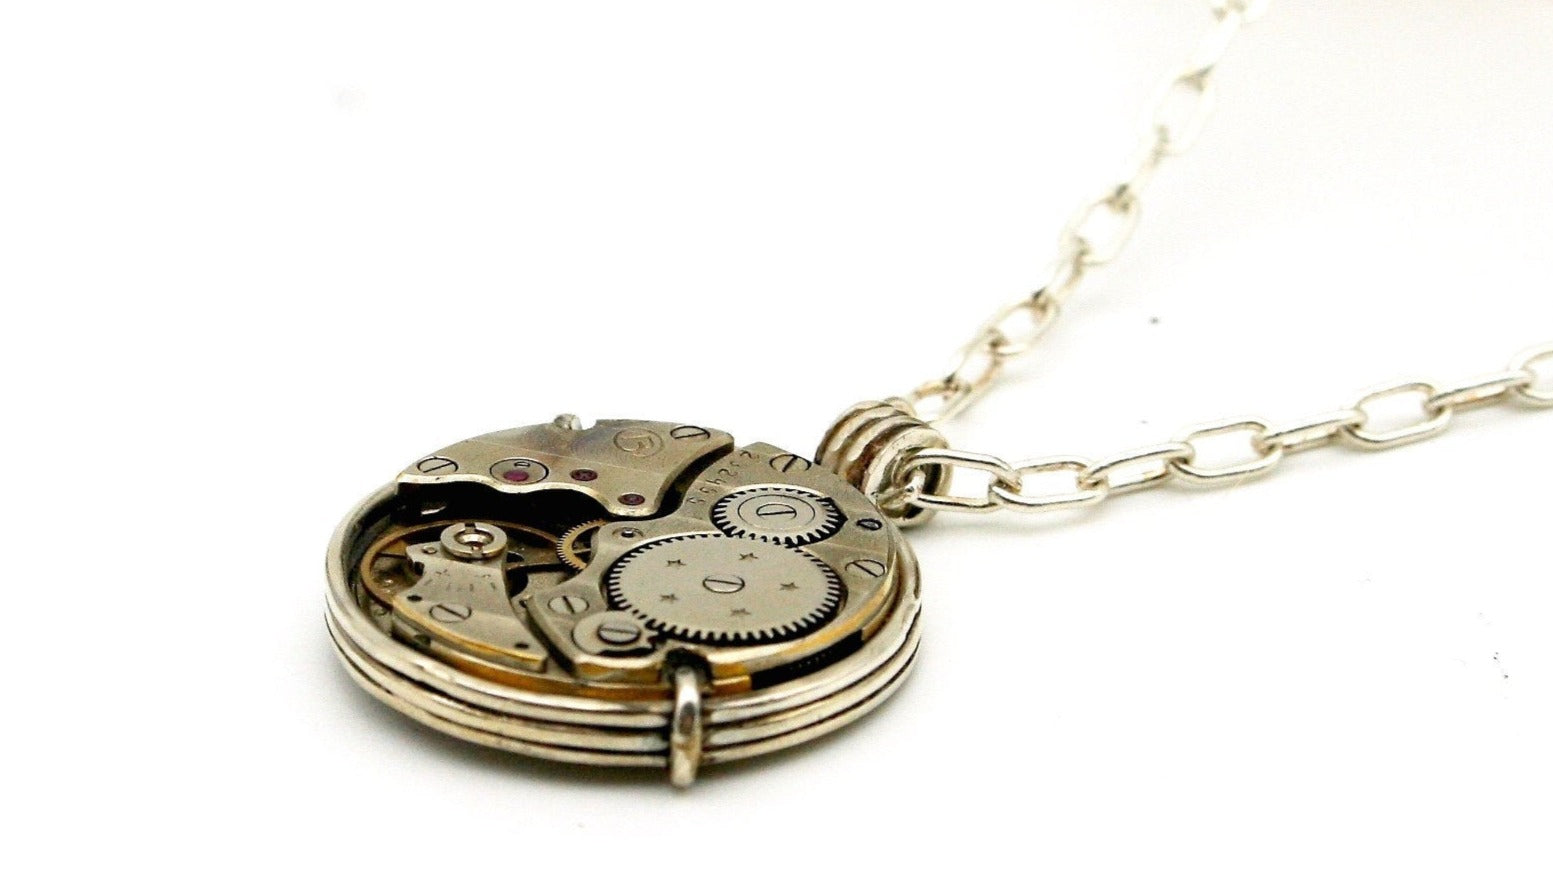 Medaglione con meccanismo d'orologio d'epoca - Pendente con ingranaggio d'orologio collana con catenina in argento art.269b - Glimoire